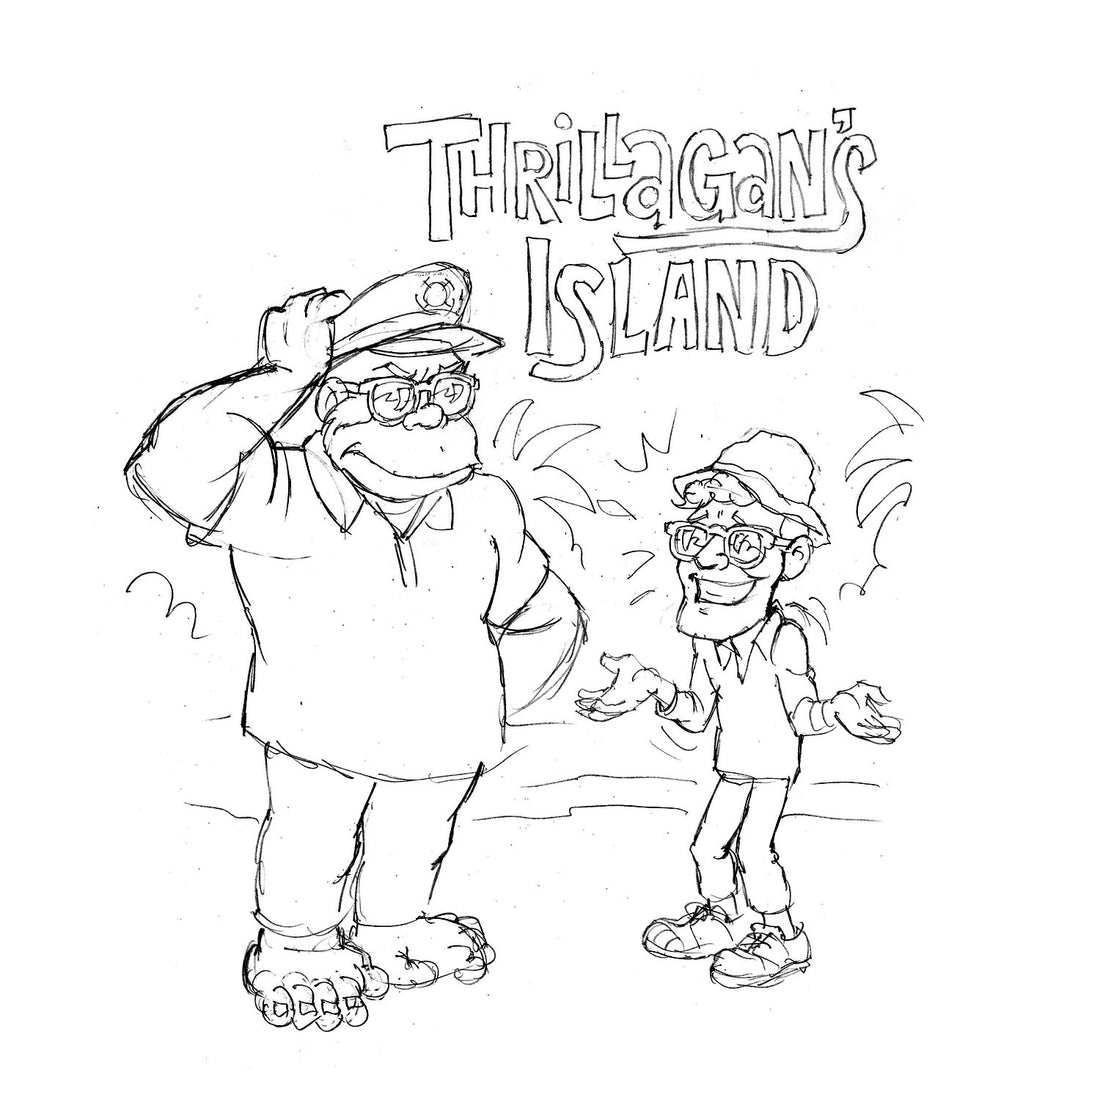 STEVE NAZAR'S DAILY DOODLE 5.31.18 - "Thrillagan's Island"